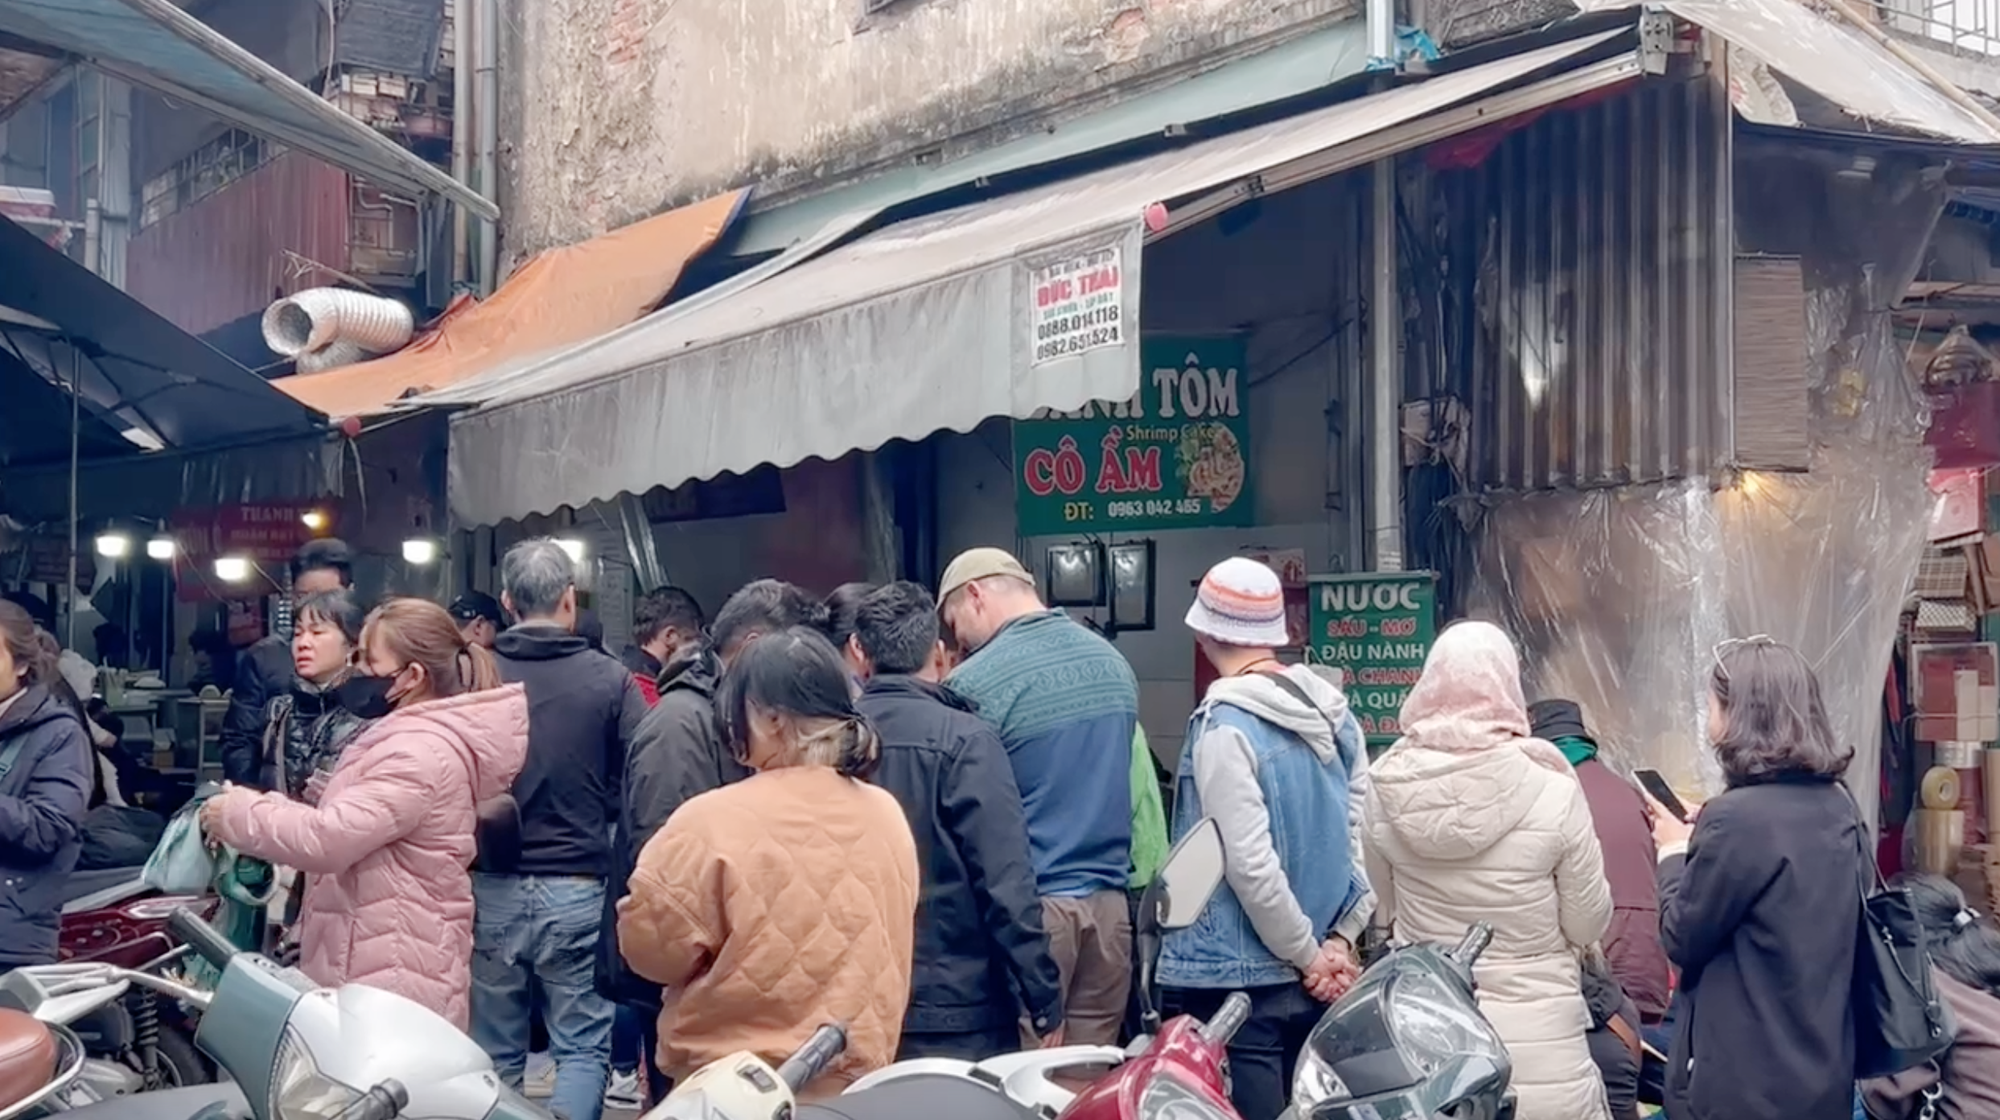 Cảnh tượng khách nước ngoài xếp hàng chờ ăn bánh tôm ở một khu chợ tại Hà Nội khiến nhiều người bất ngờ- Ảnh 1.